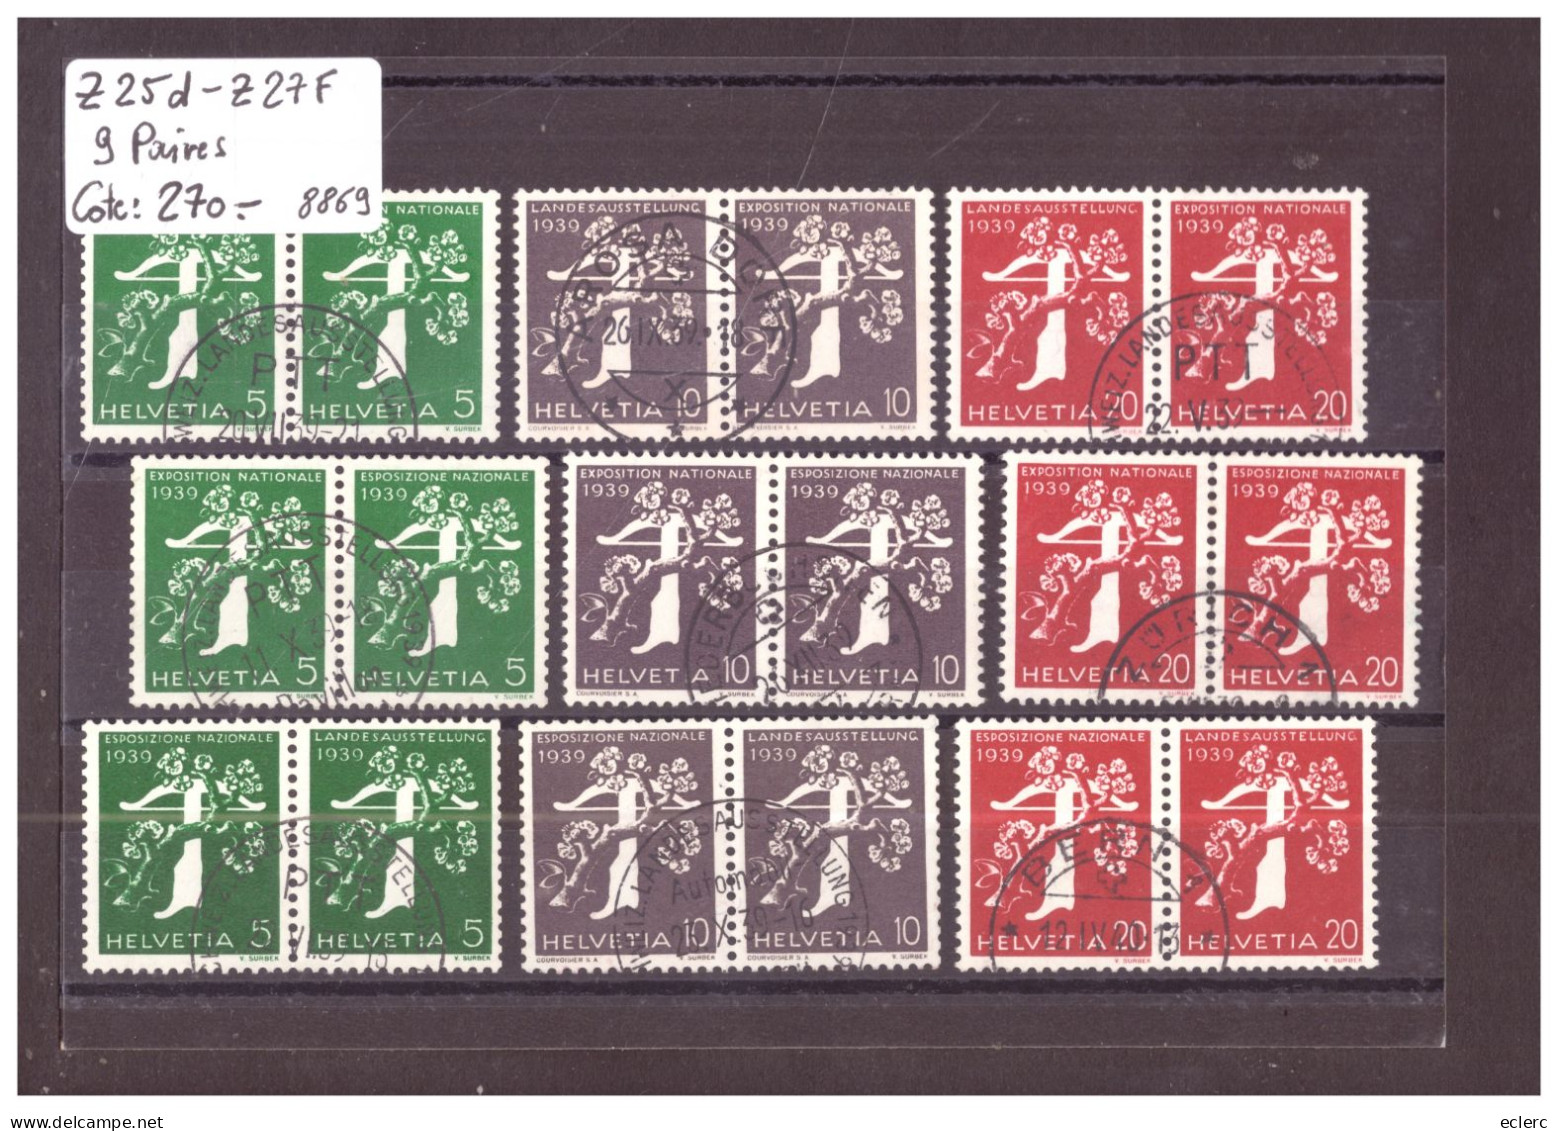 9 PAIRES / 3 LANGUES - TIMBRES DE ROULEAUX - No Z 25d-Z 27f  OBLITERES - COTE: 270.- - Coil Stamps